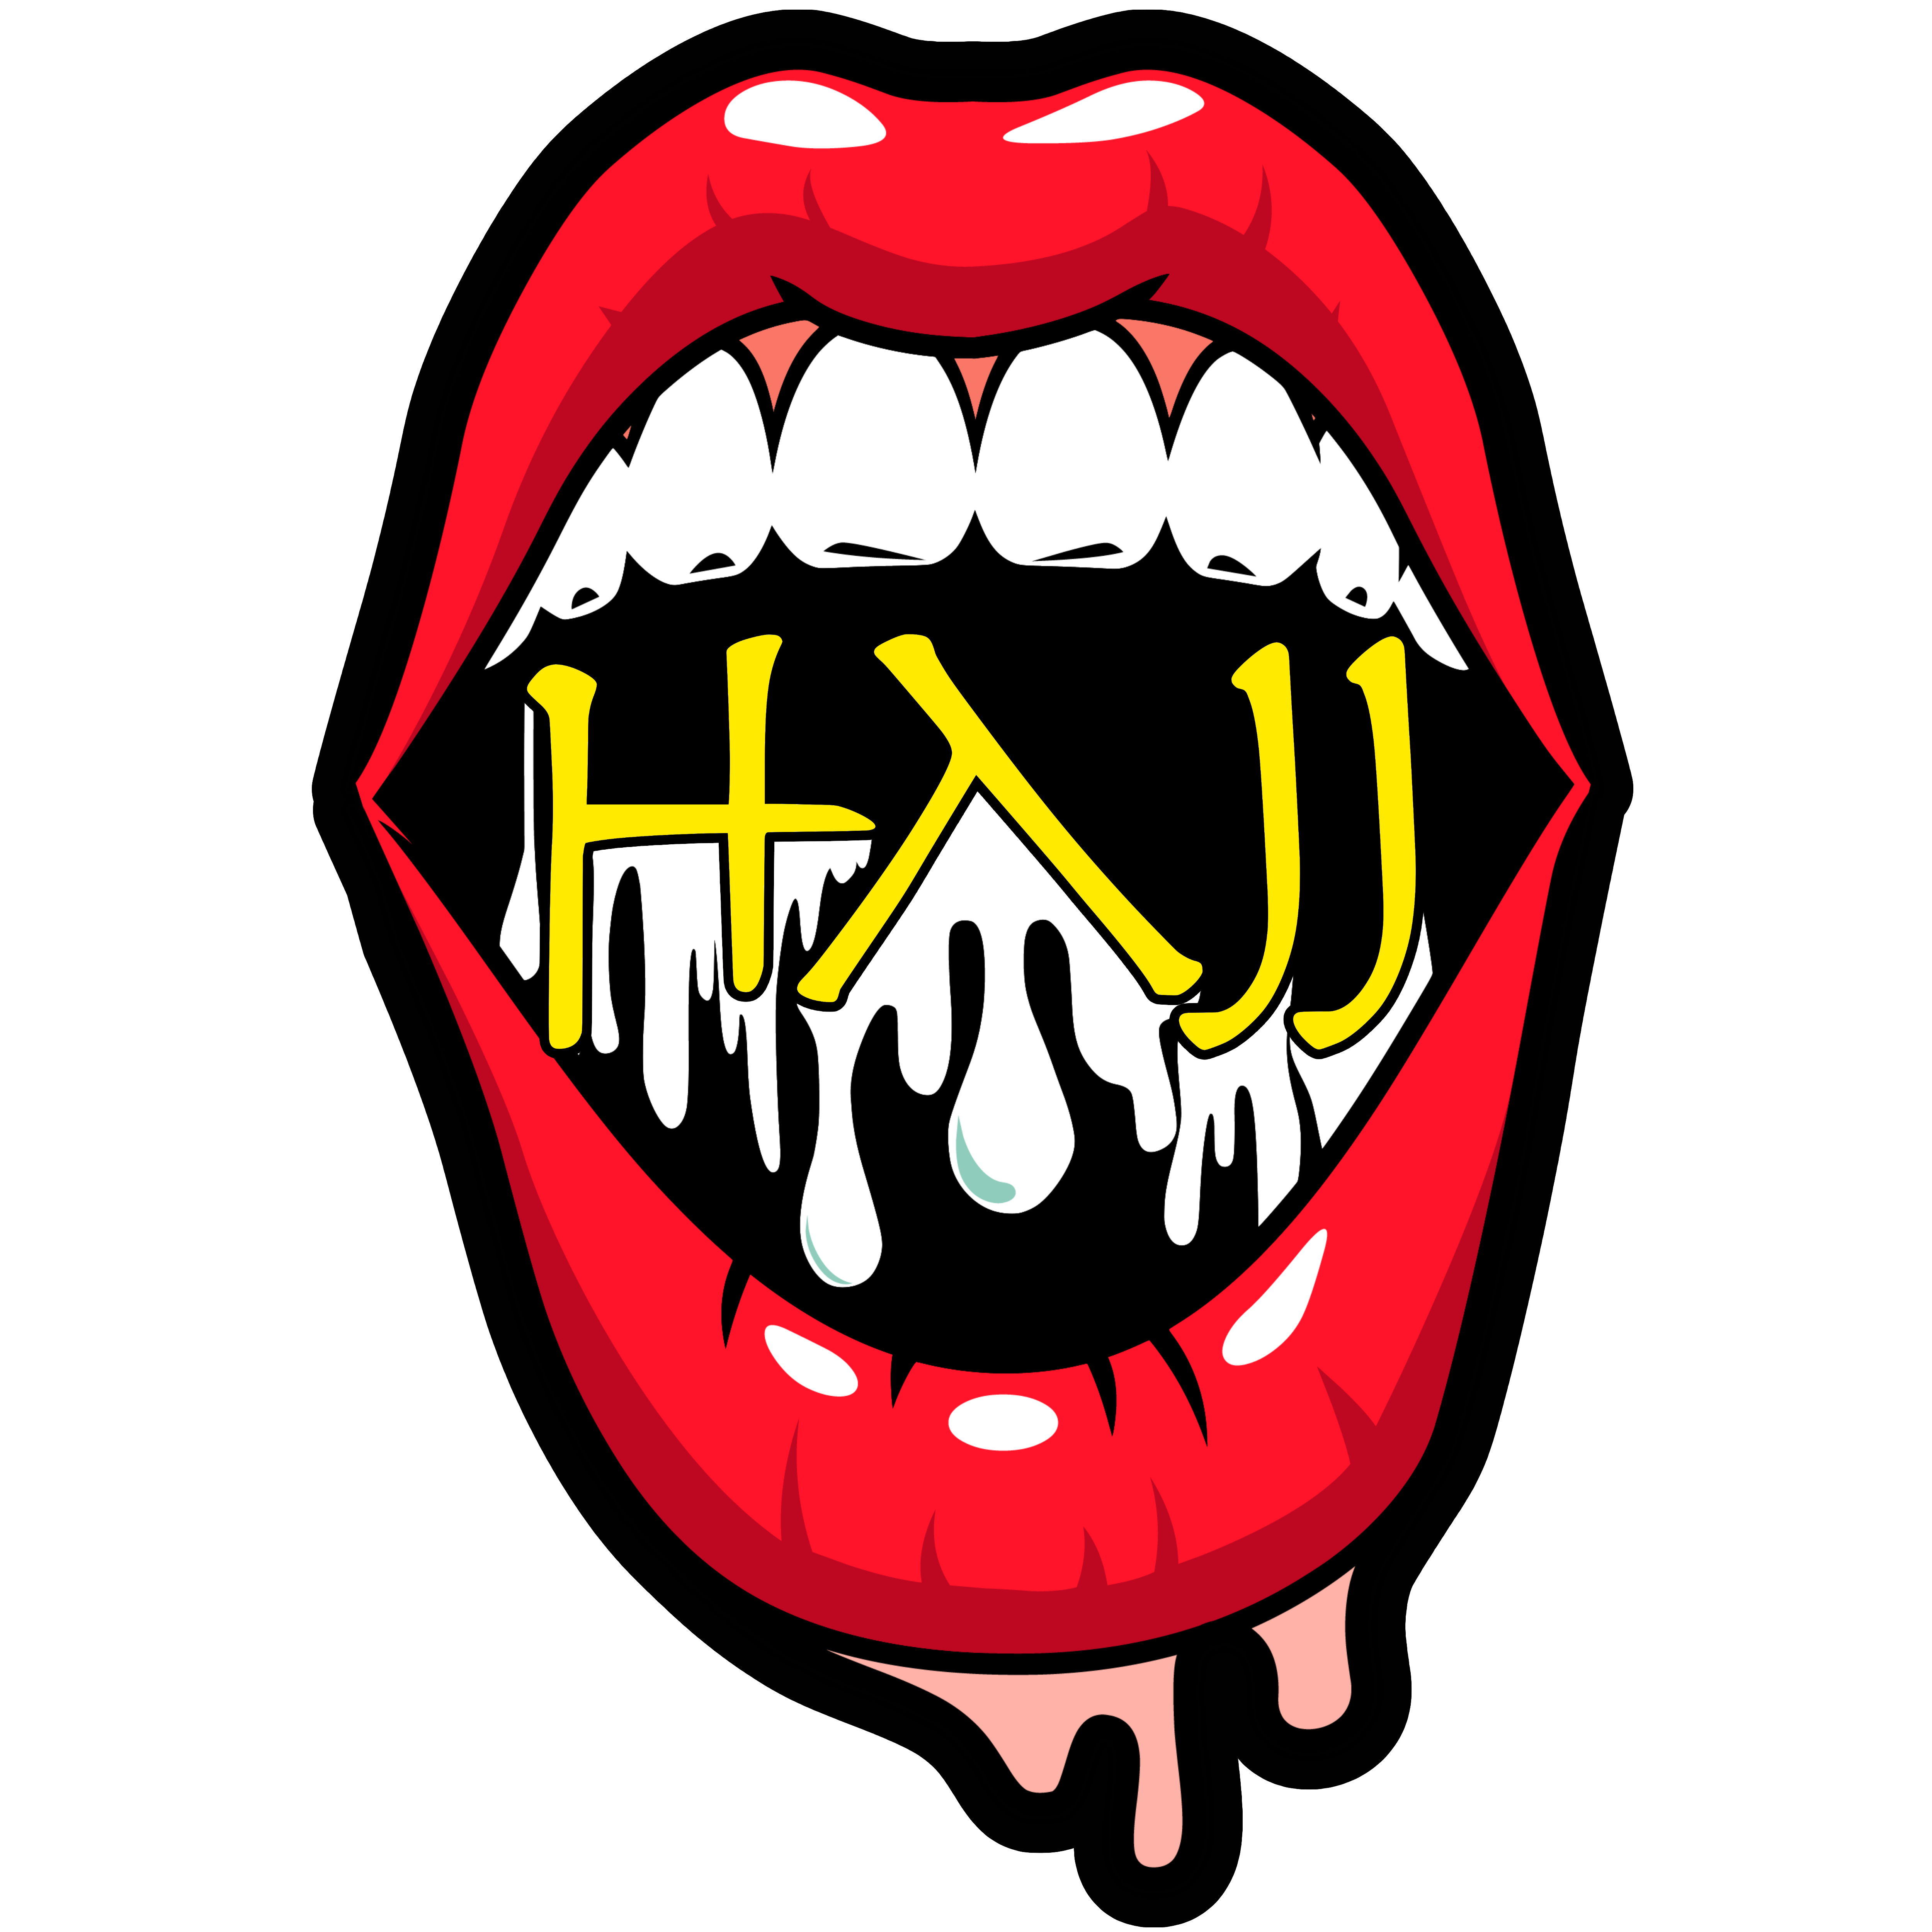 HAJJ Mouth Logo